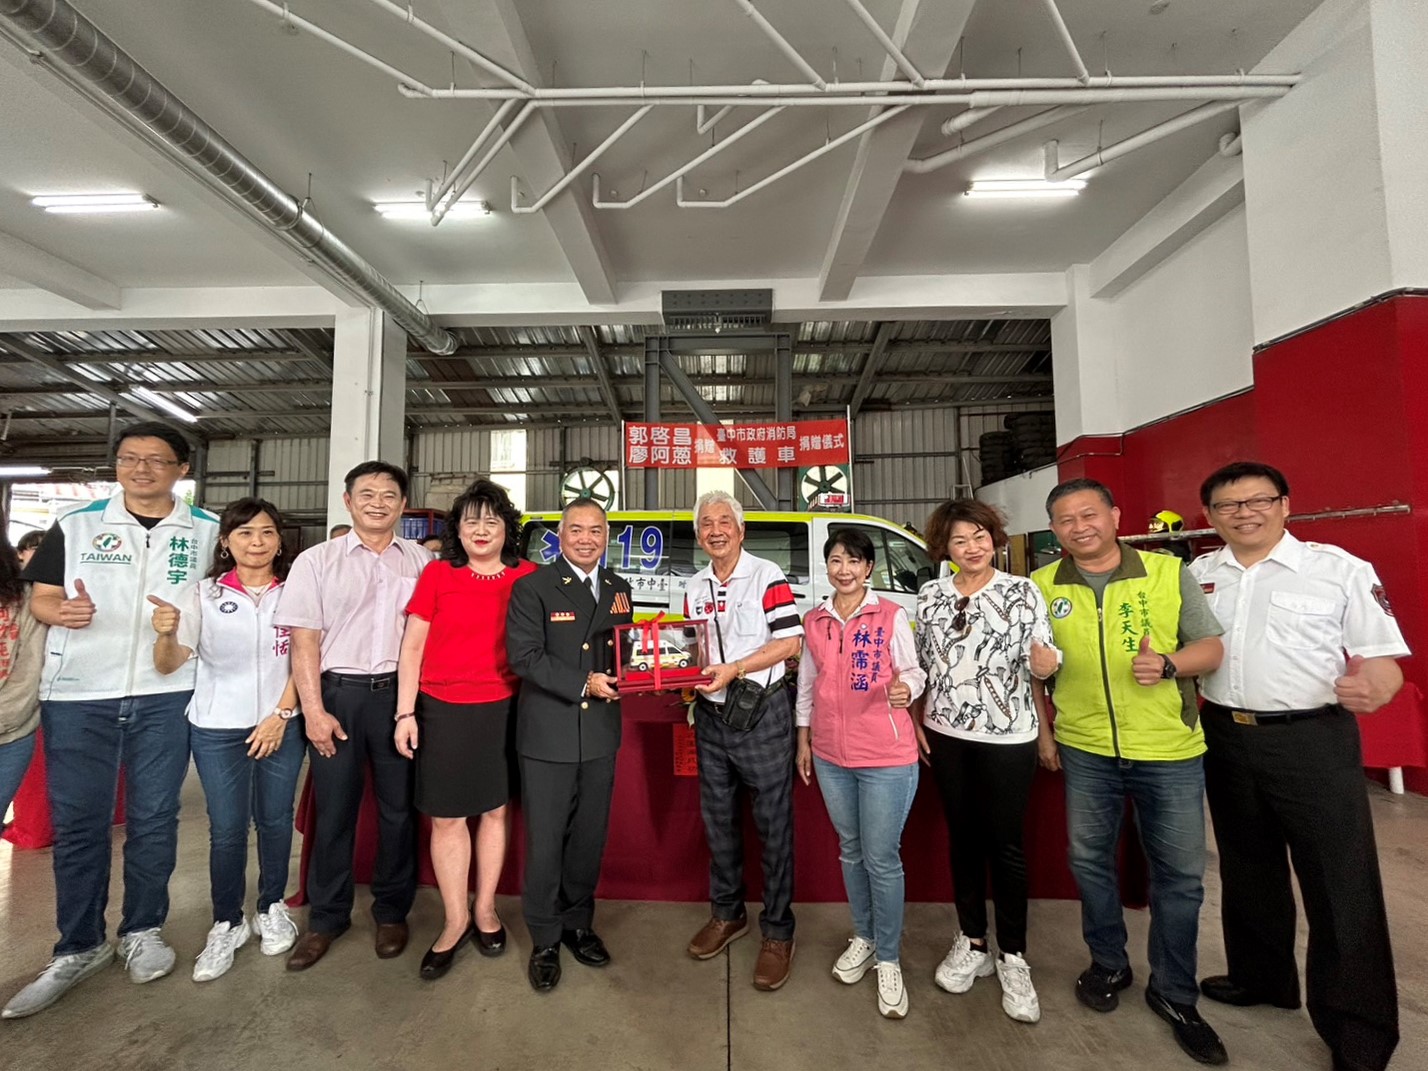 消防局長致贈郭啓昌先生、廖阿葱女士救護車模型及感謝狀